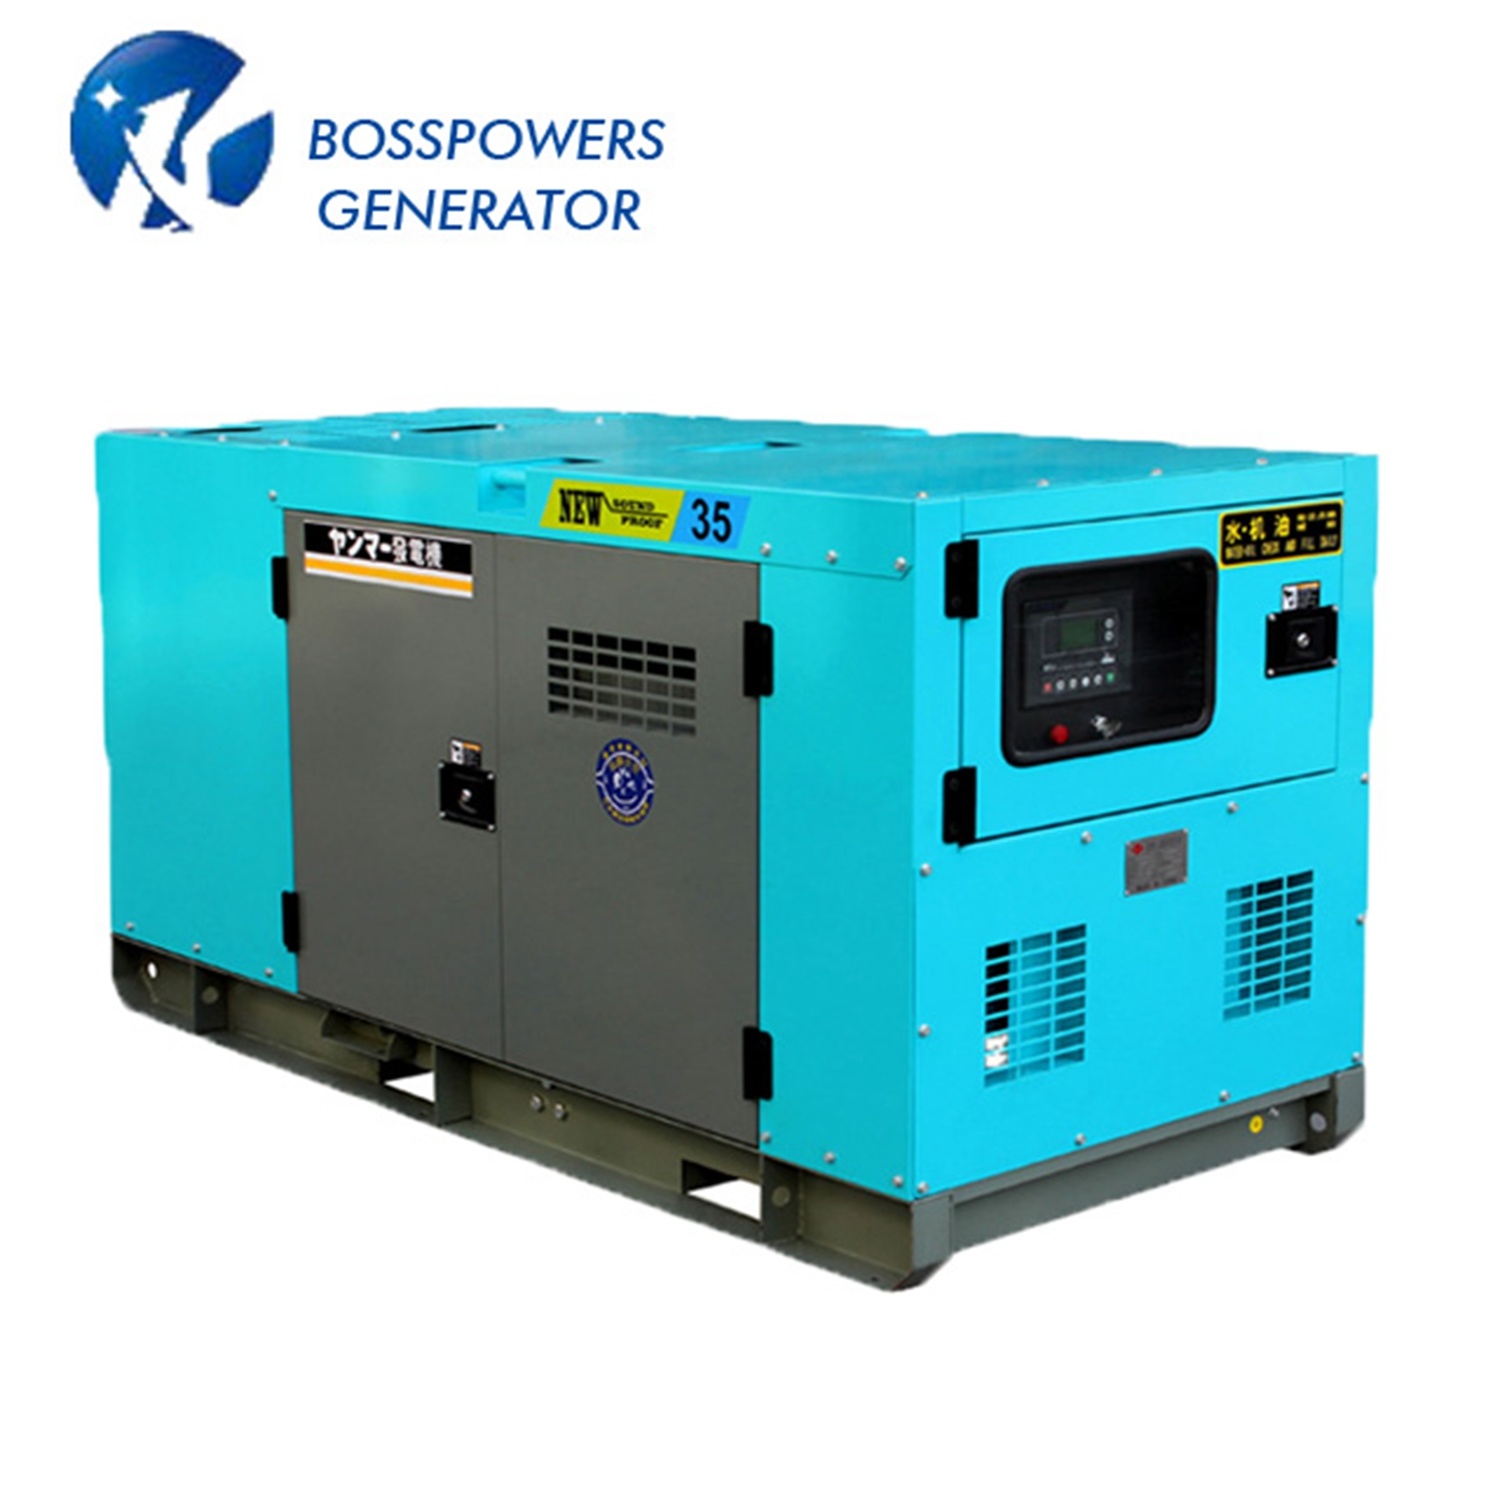 Water Cooled 60Hz 25kVA Isuzu 4jb1 Silent Diesel Genset Generator